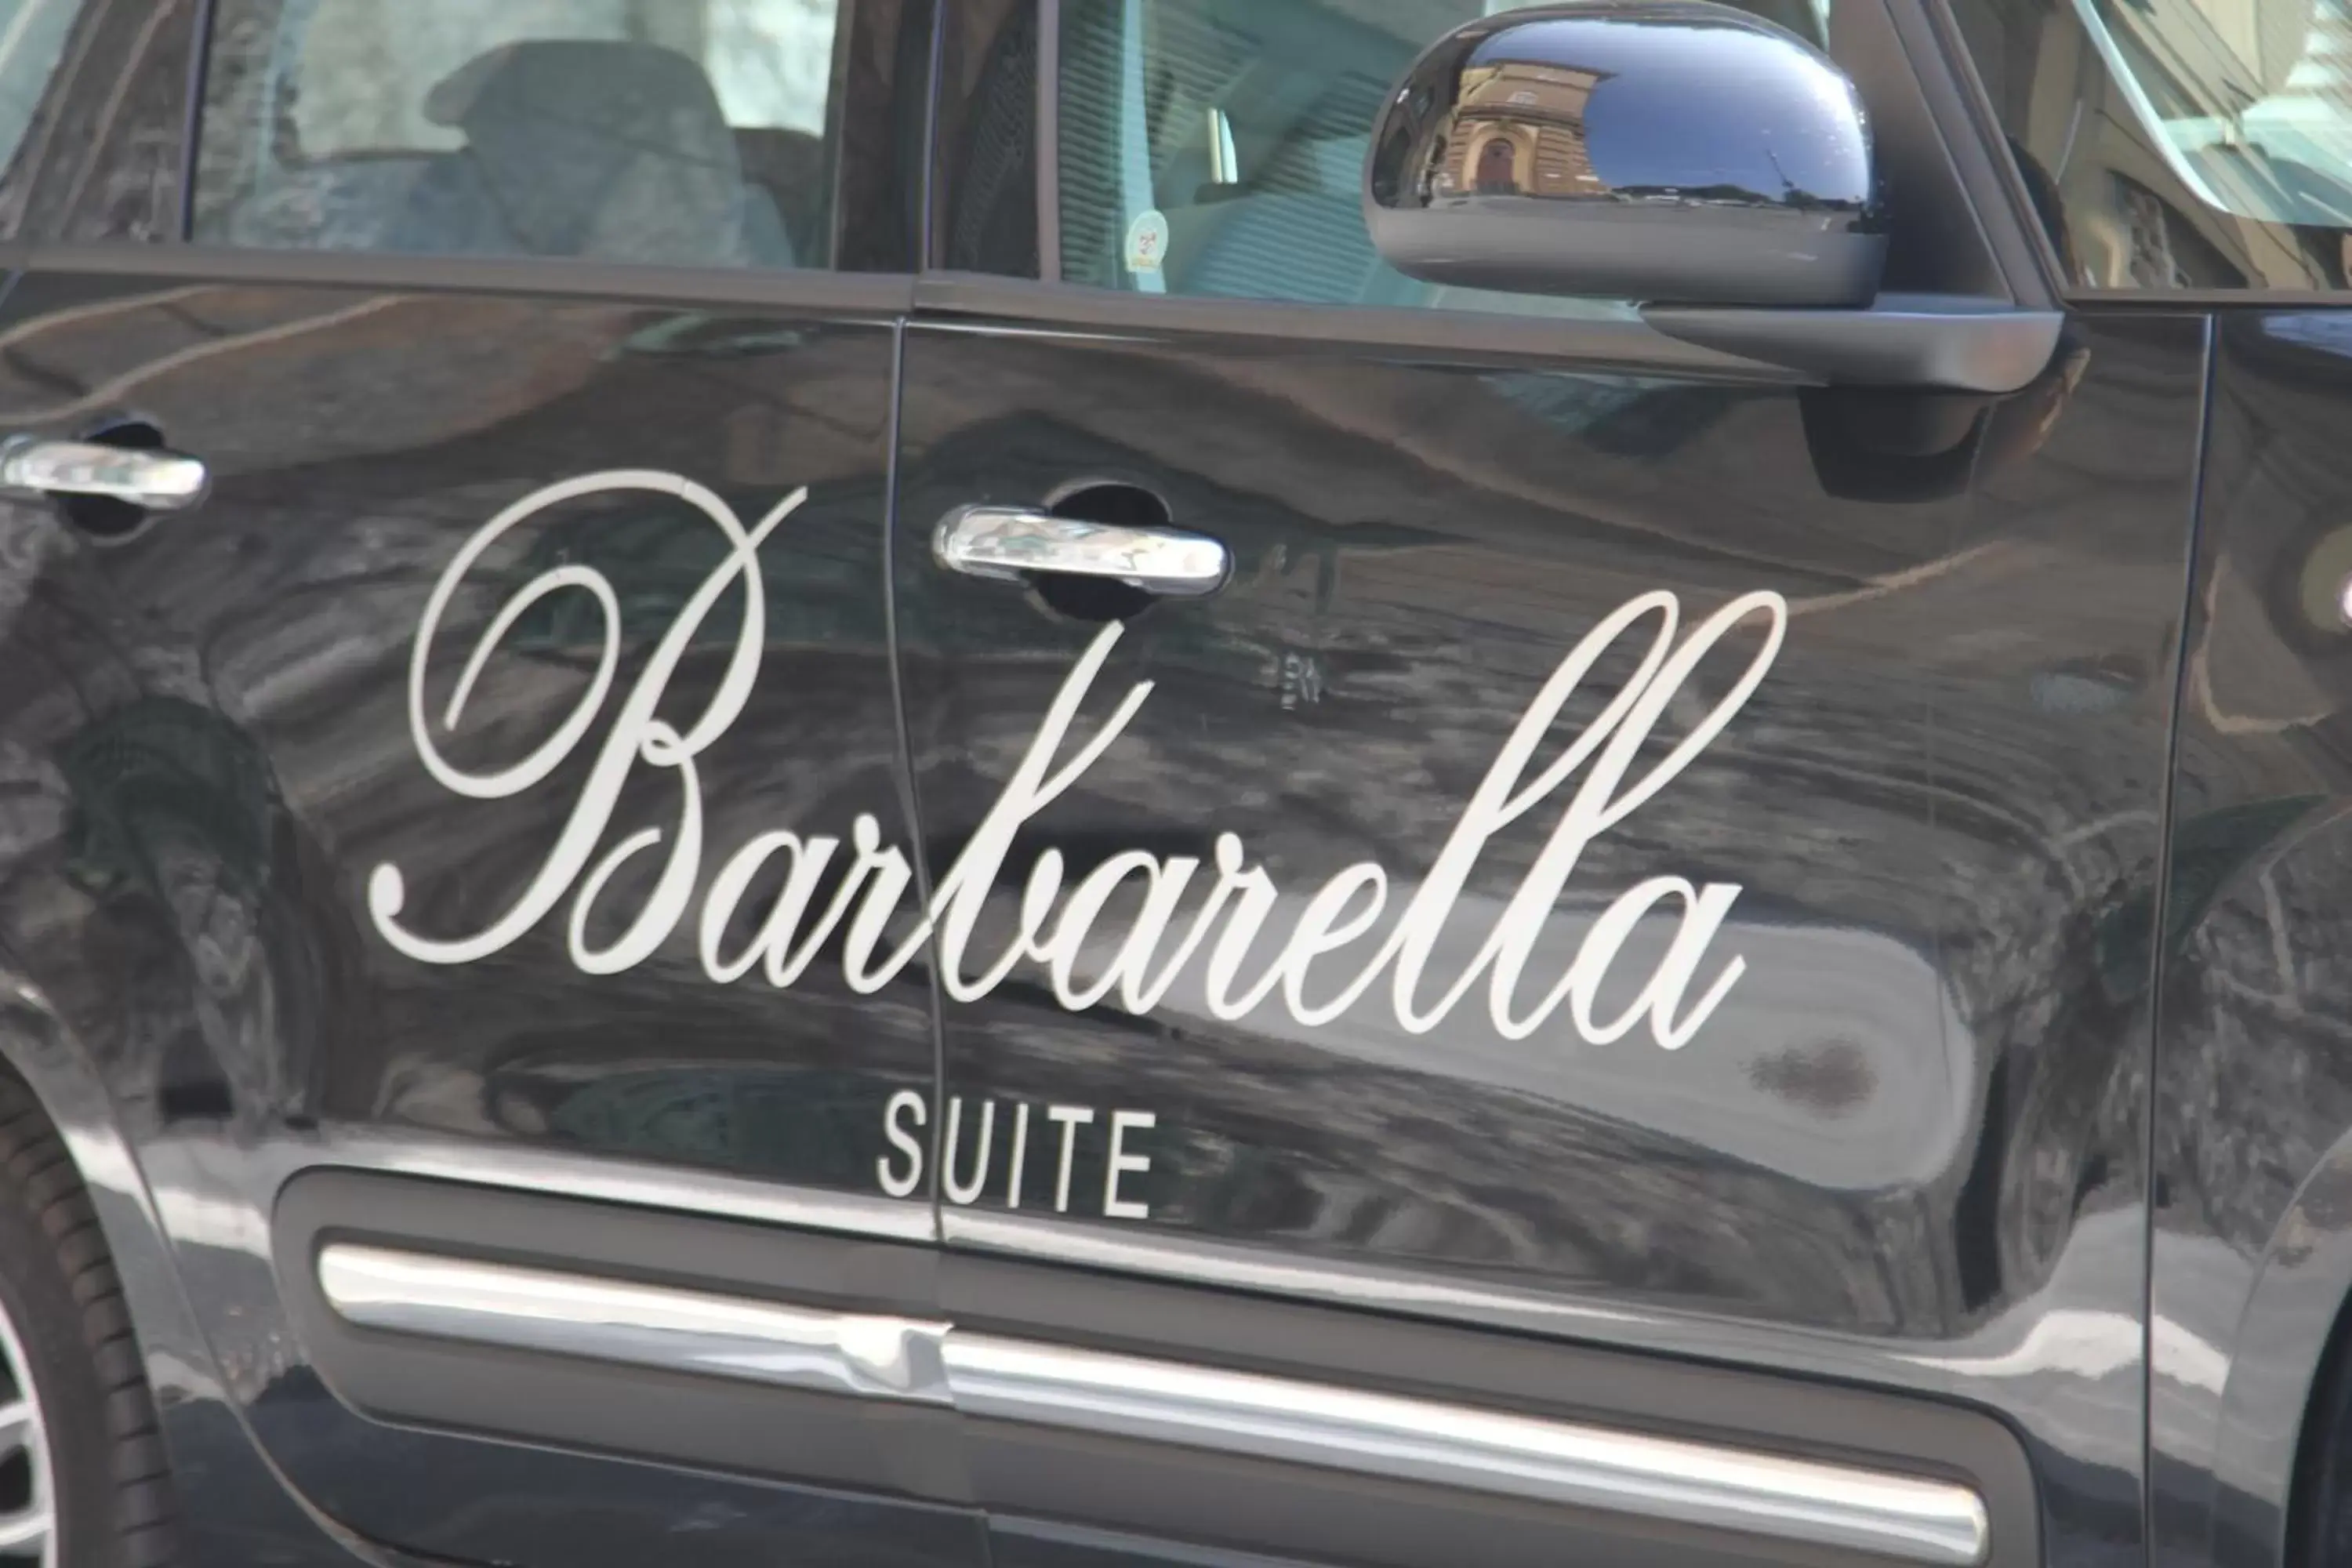 Area and facilities in Barbarella Home